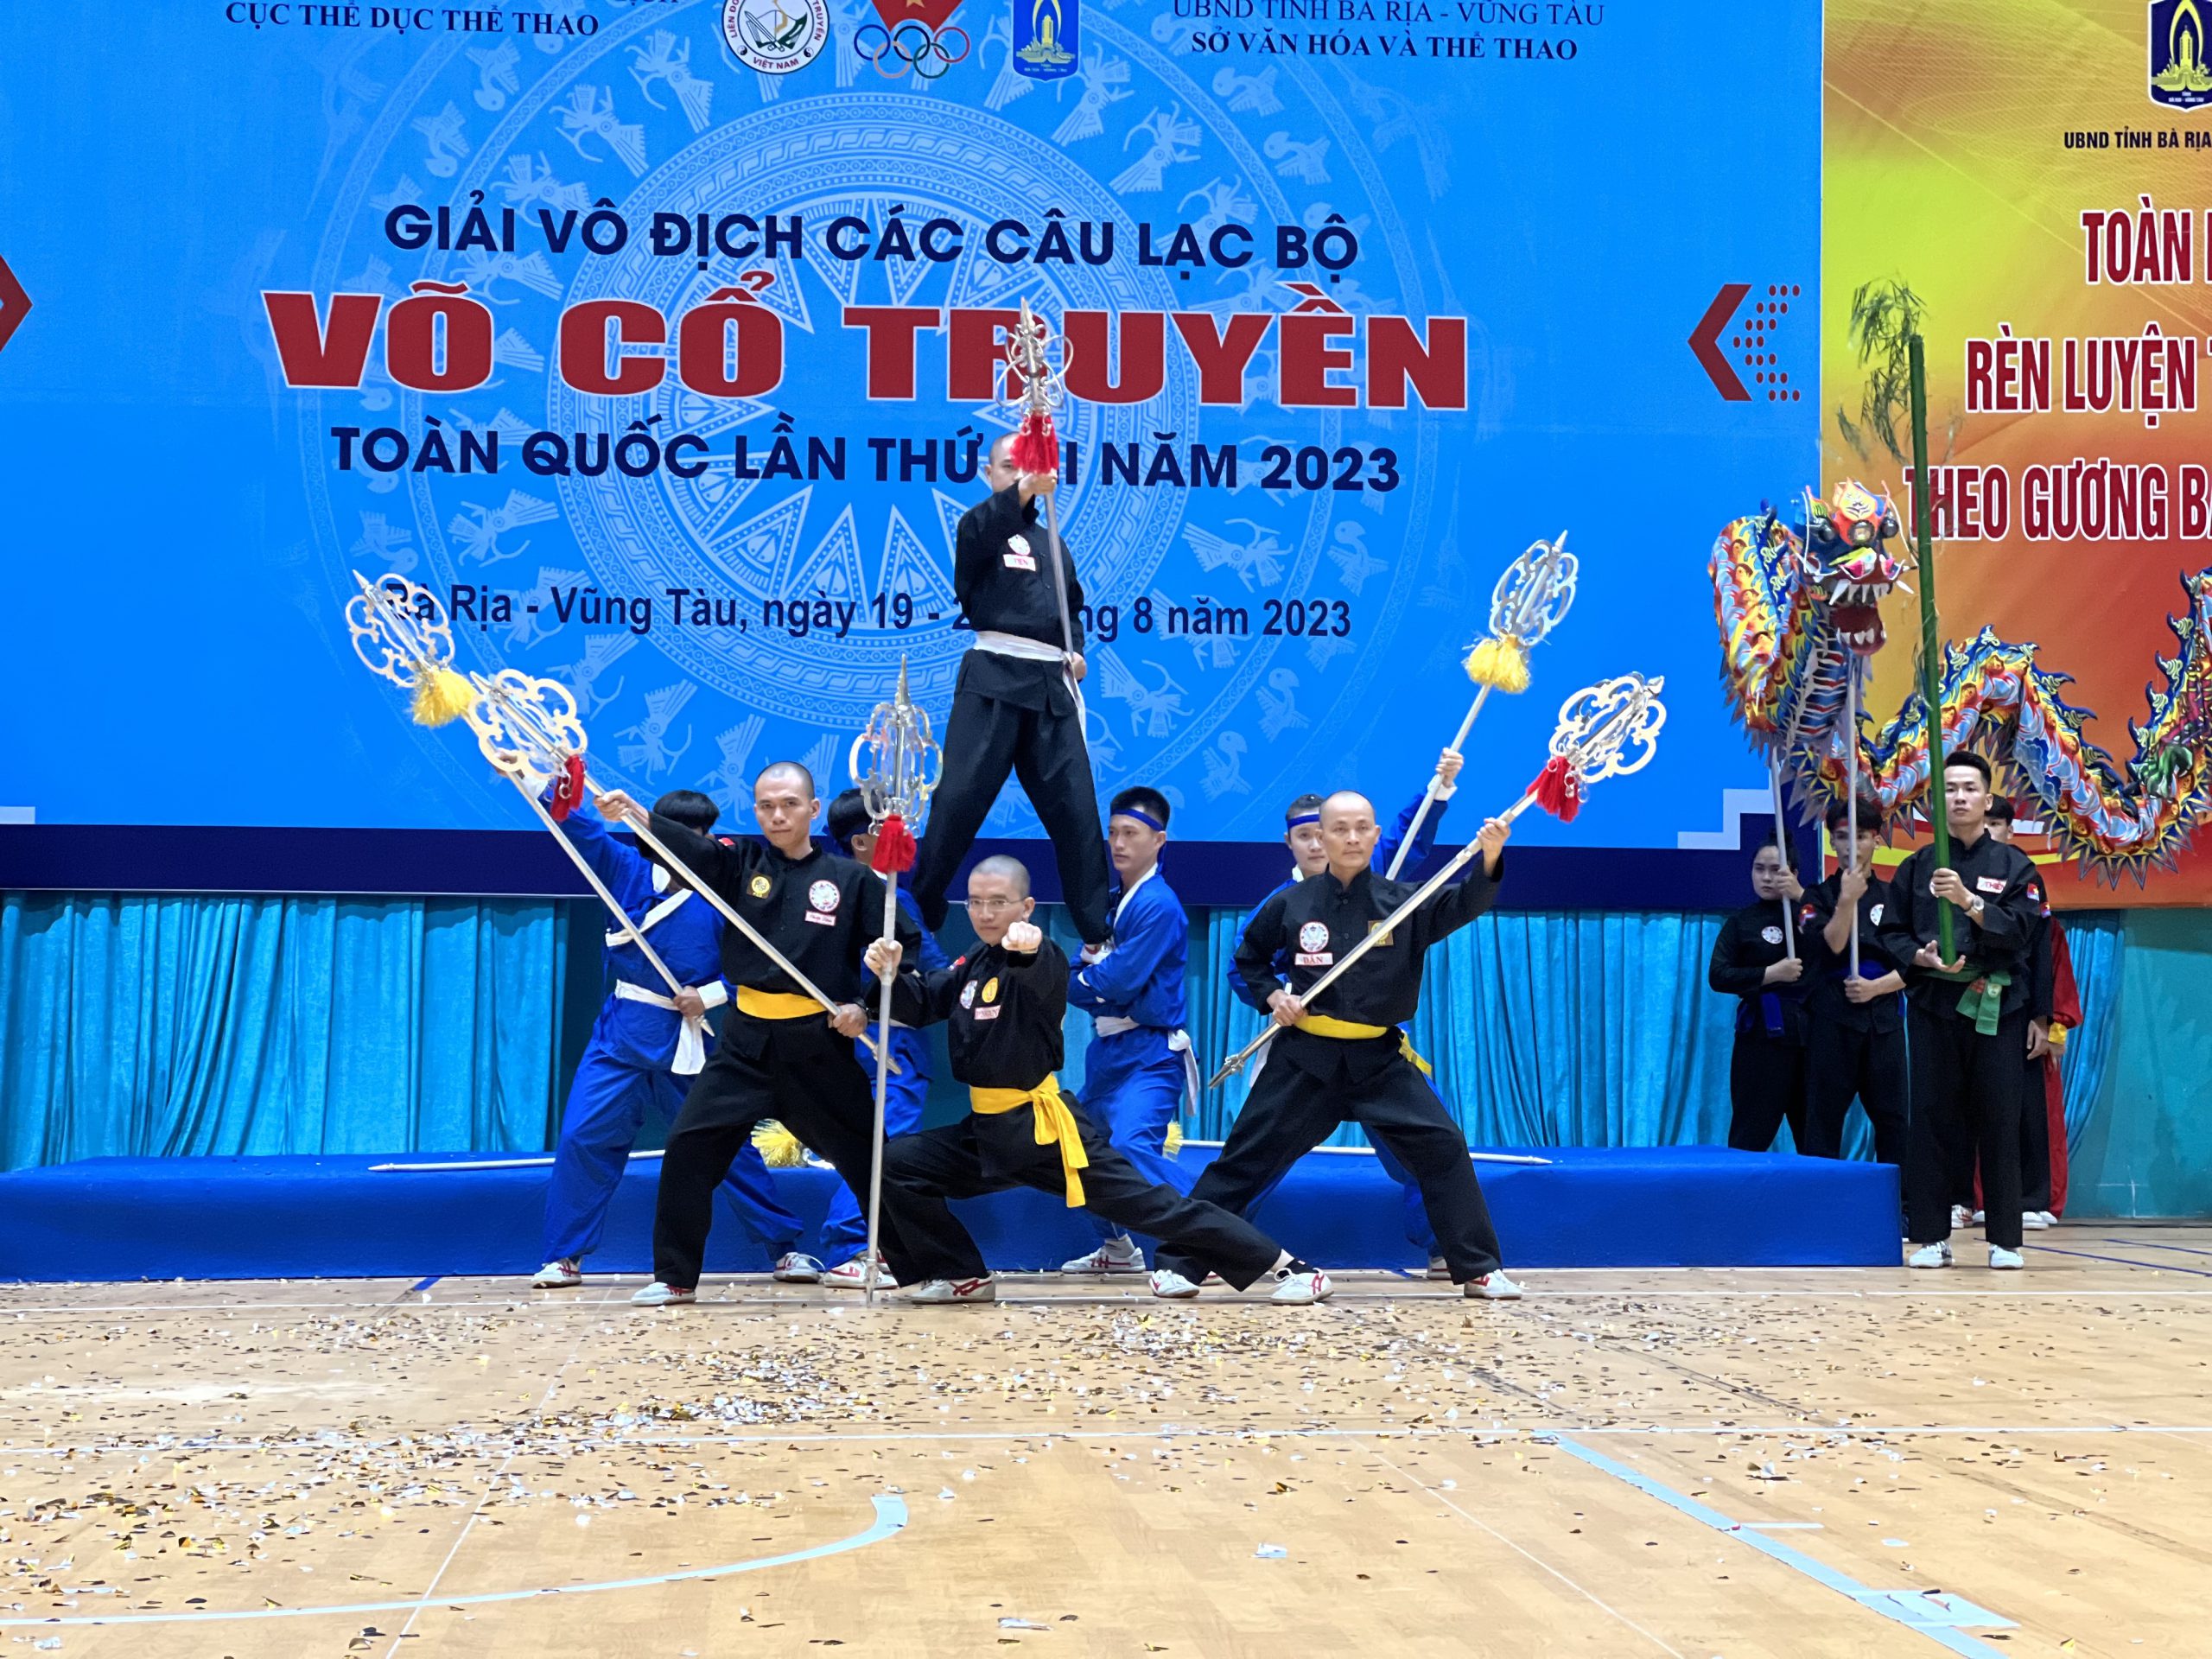 Giải vô địch các CLB võ cổ truyền toàn quốc năm 2023 góp phần  trong việc bảo tồn và phát triển võ thuật cổ truyền Việt Nam.